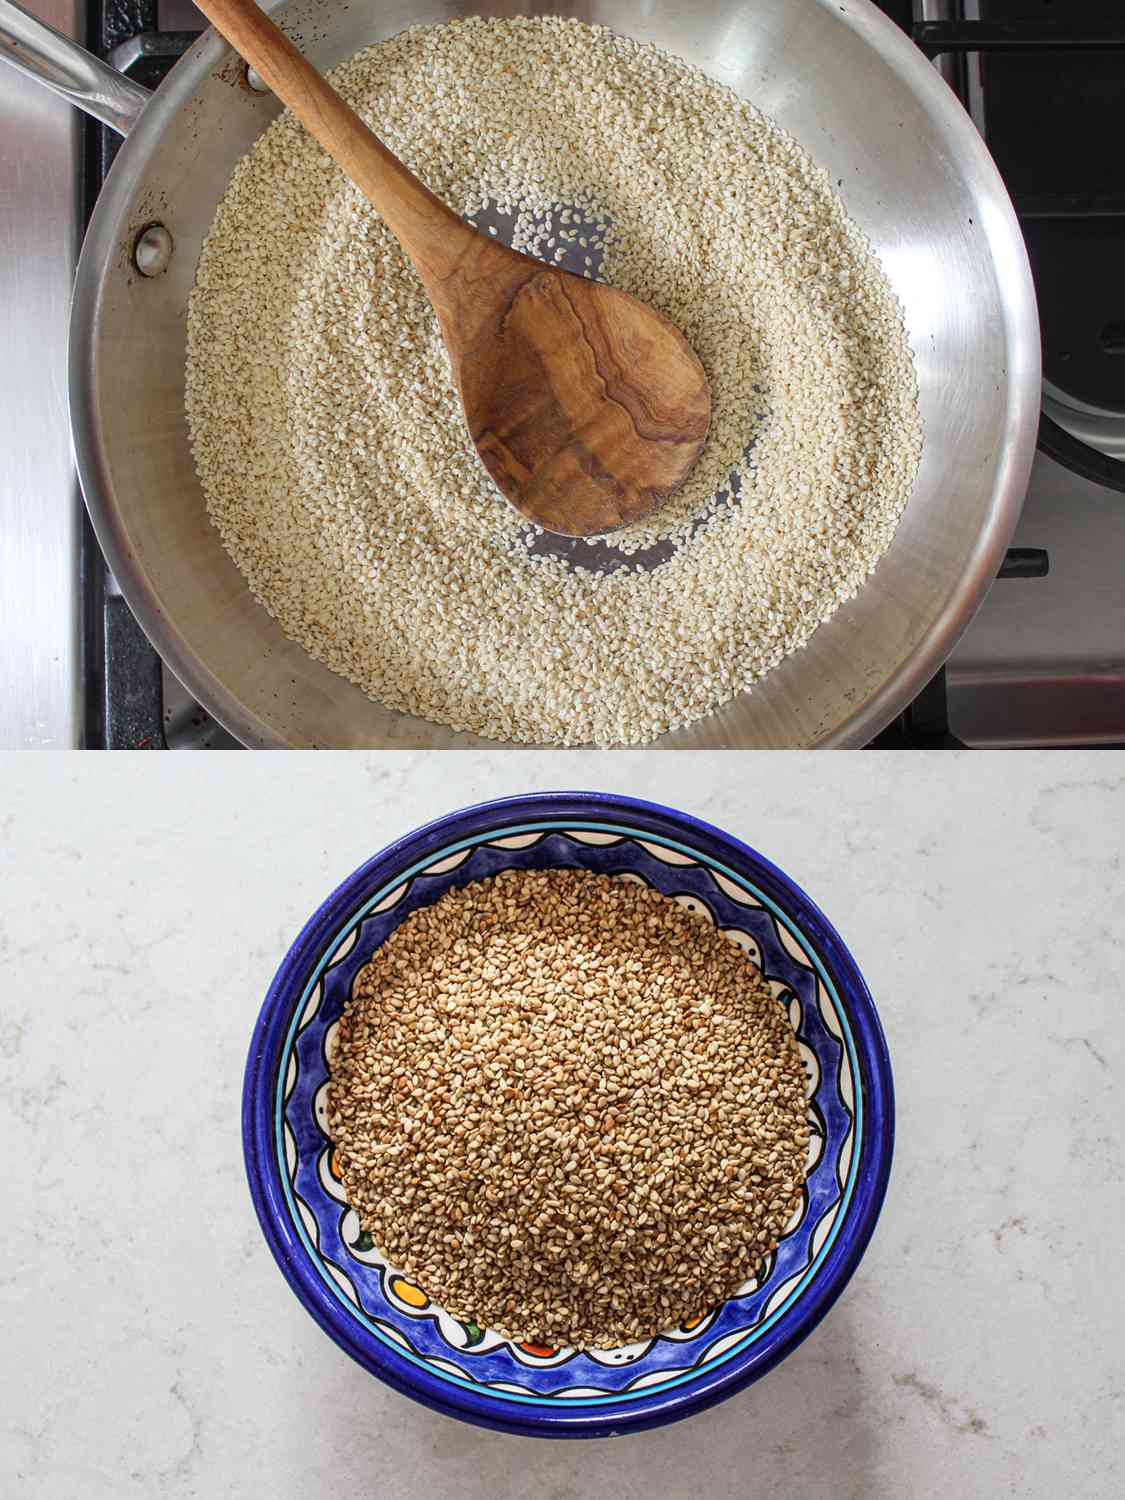 两幅图像拼贴。上图:用木勺将芝麻放入平底锅中。下图:蓝色碗里的烤芝麻。